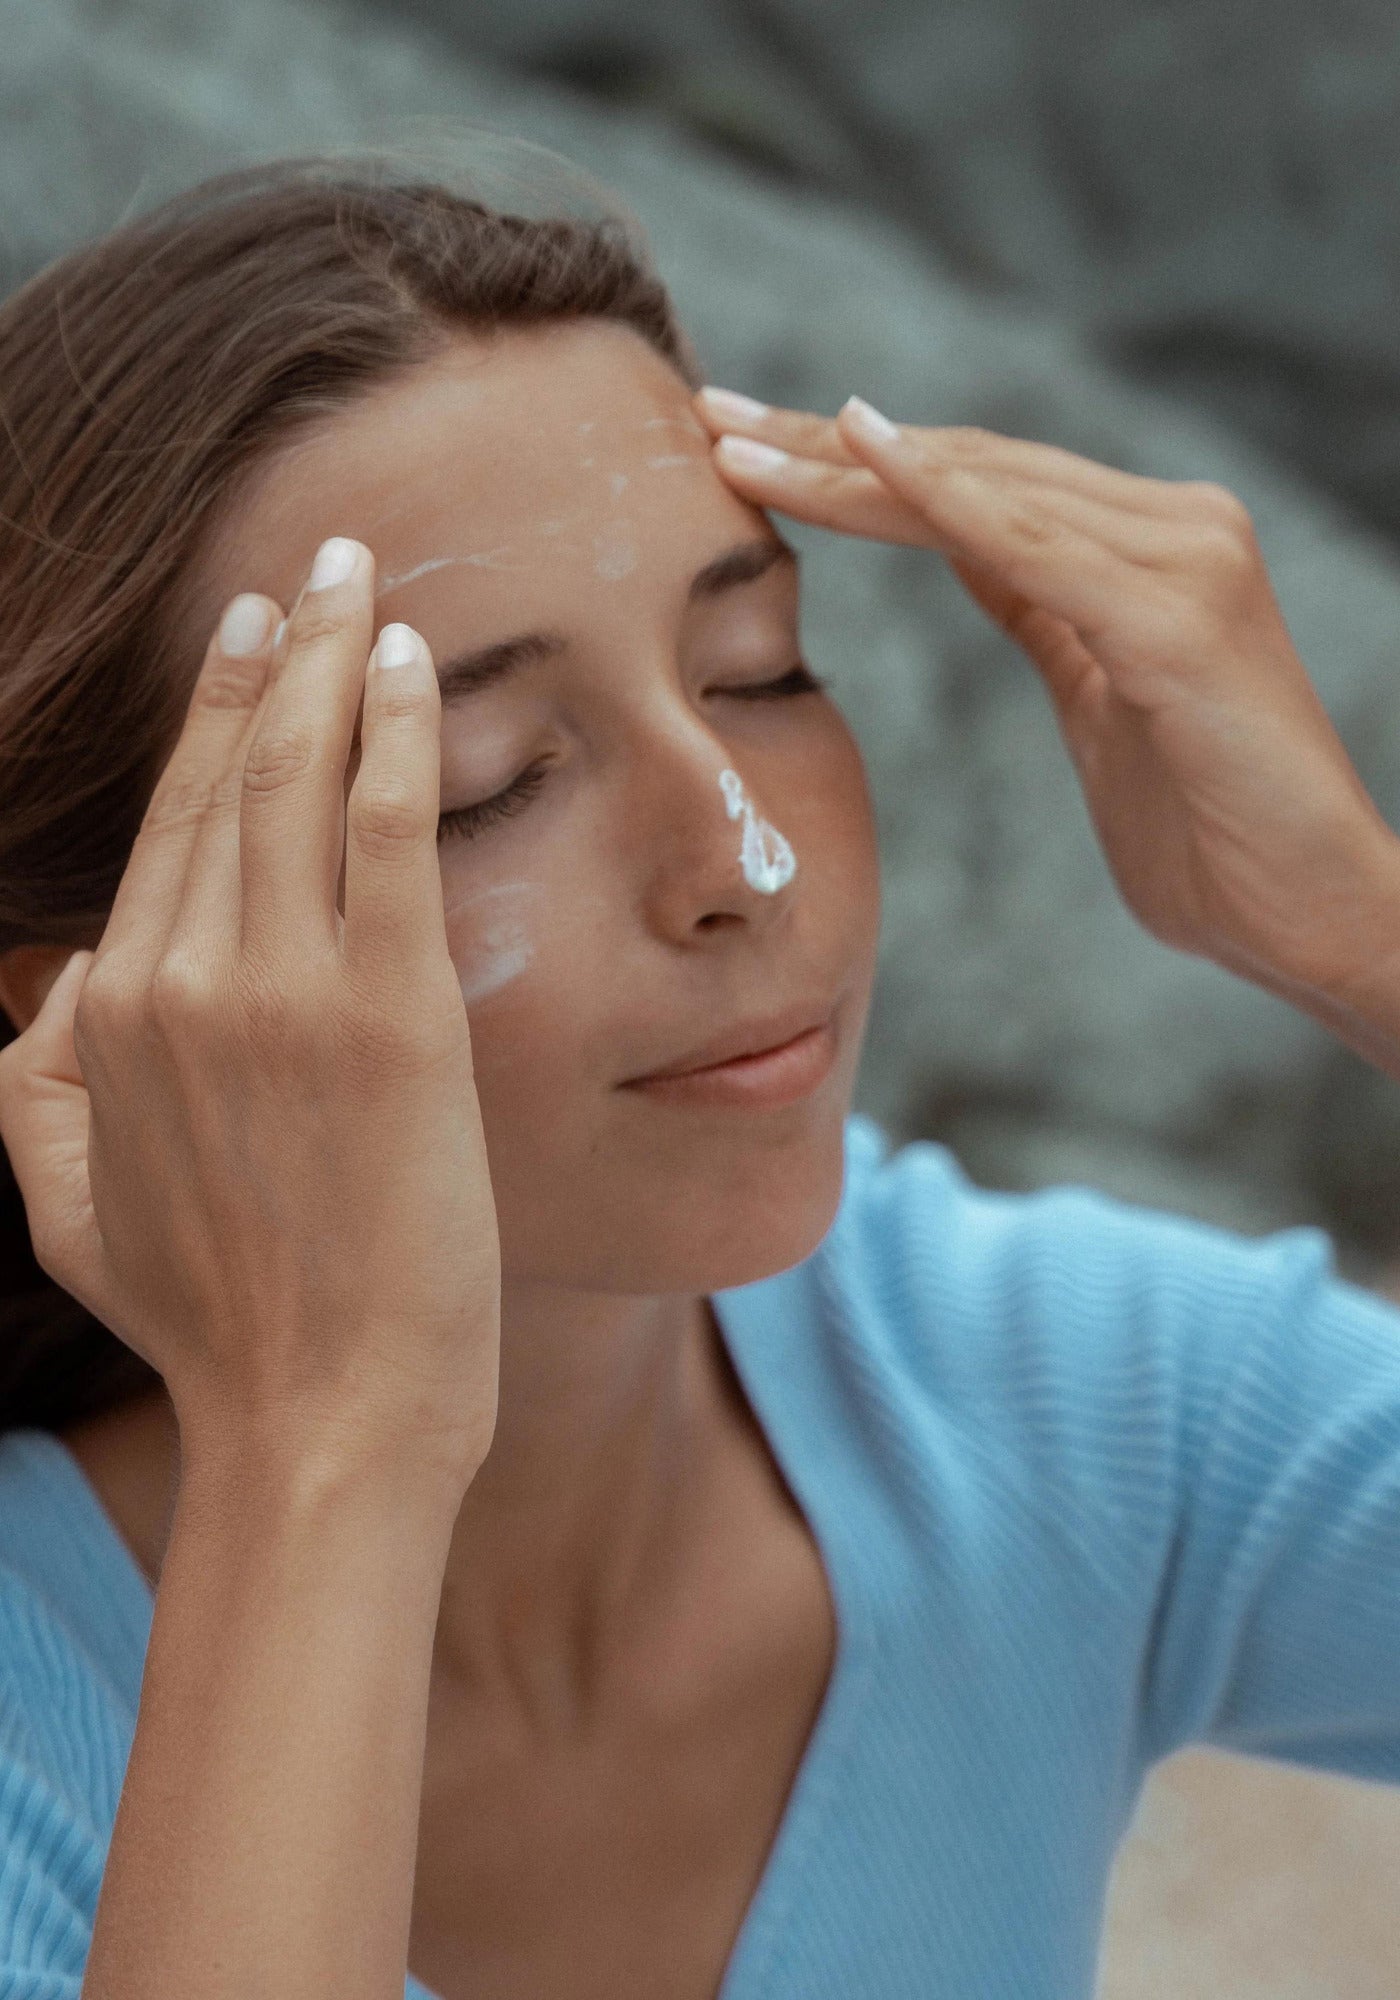 La femme applique sur son visage la crème intense visage de chez Atlantik Care